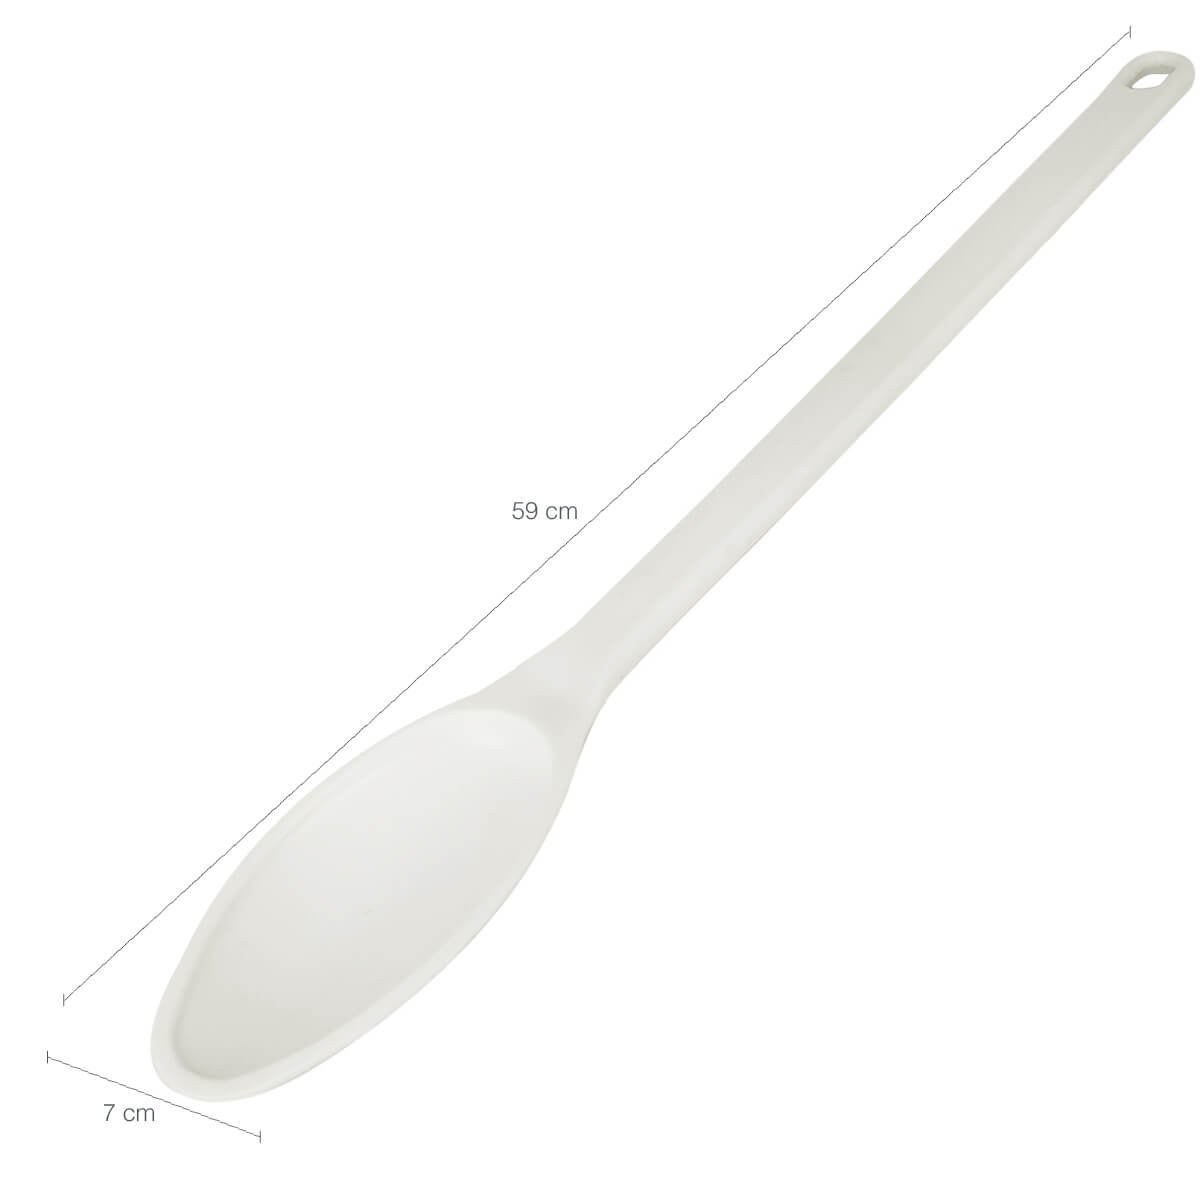 Colher Grande para Restaurante Cozinha Industrial 59cm Plástica Branca Mexer Alimentos Cinquetti - 5